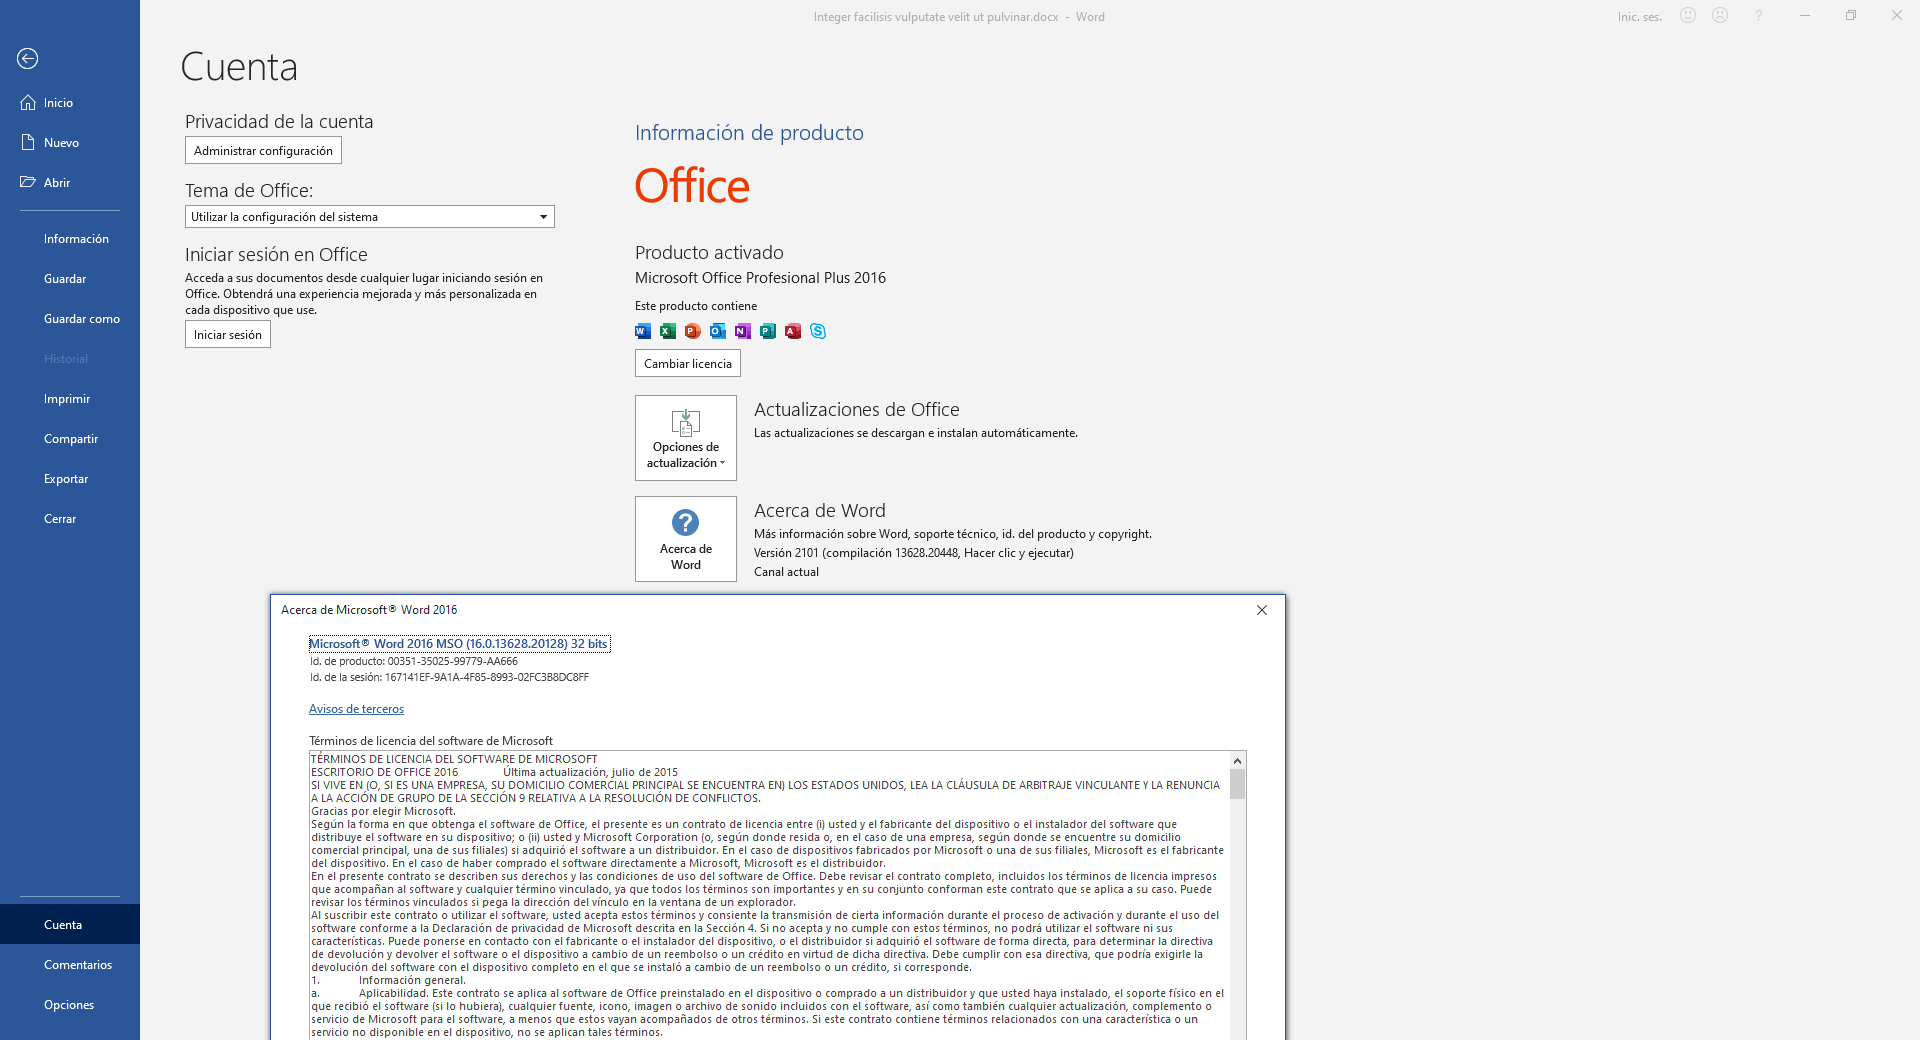 Cómo saber qué versión de Office tengo? Comprobar versión de Office - IONOS